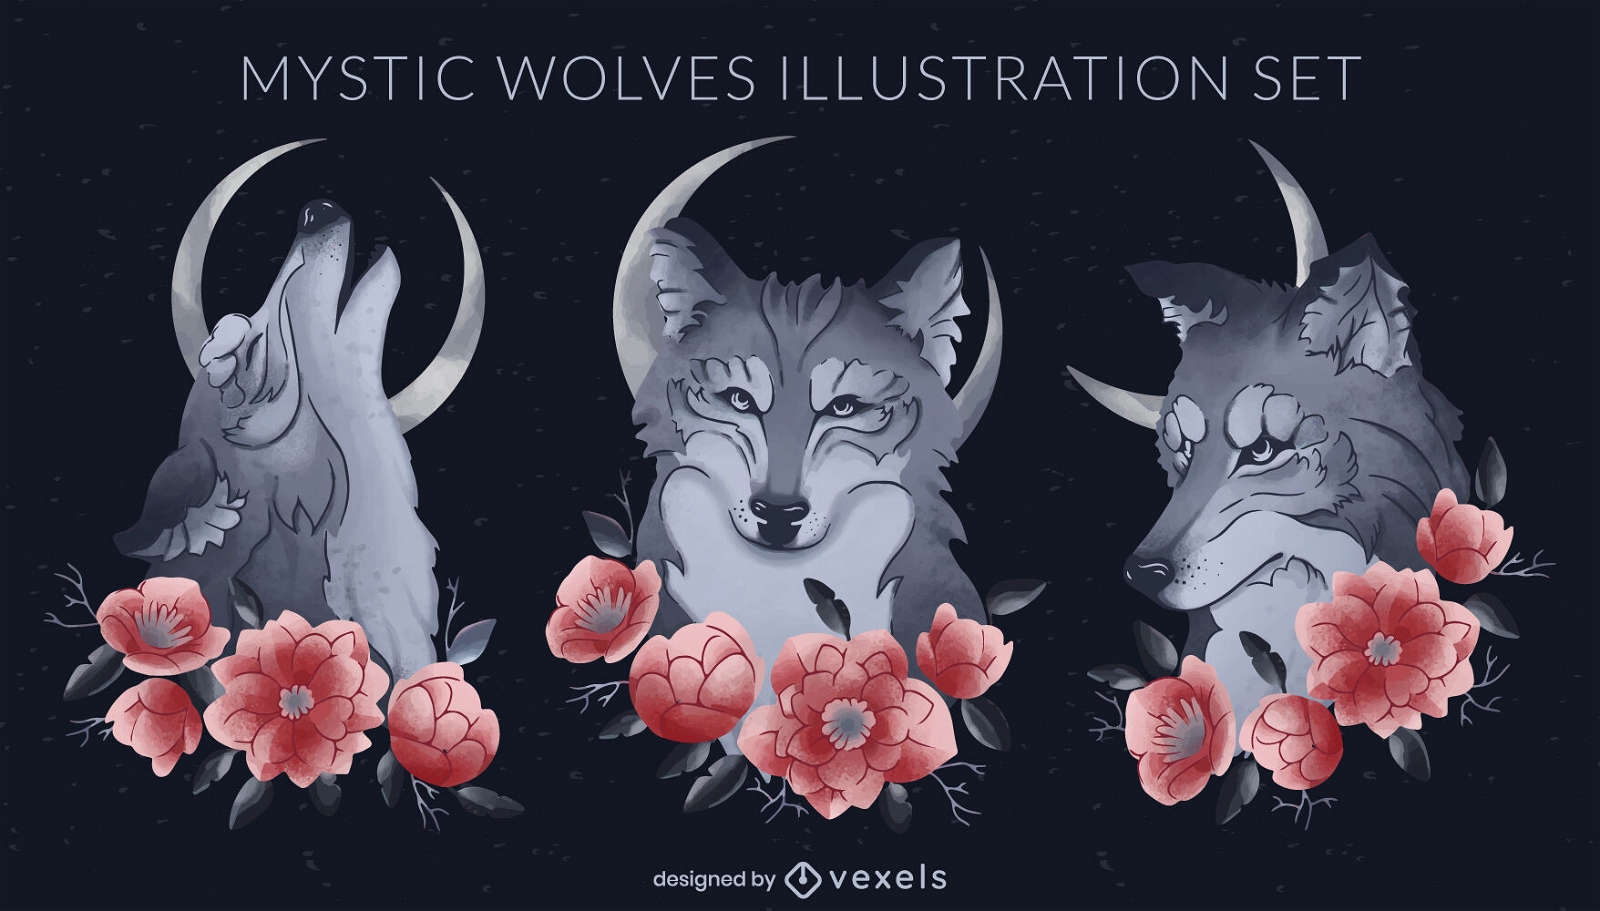 Illustrationsset für mystische Wölfe